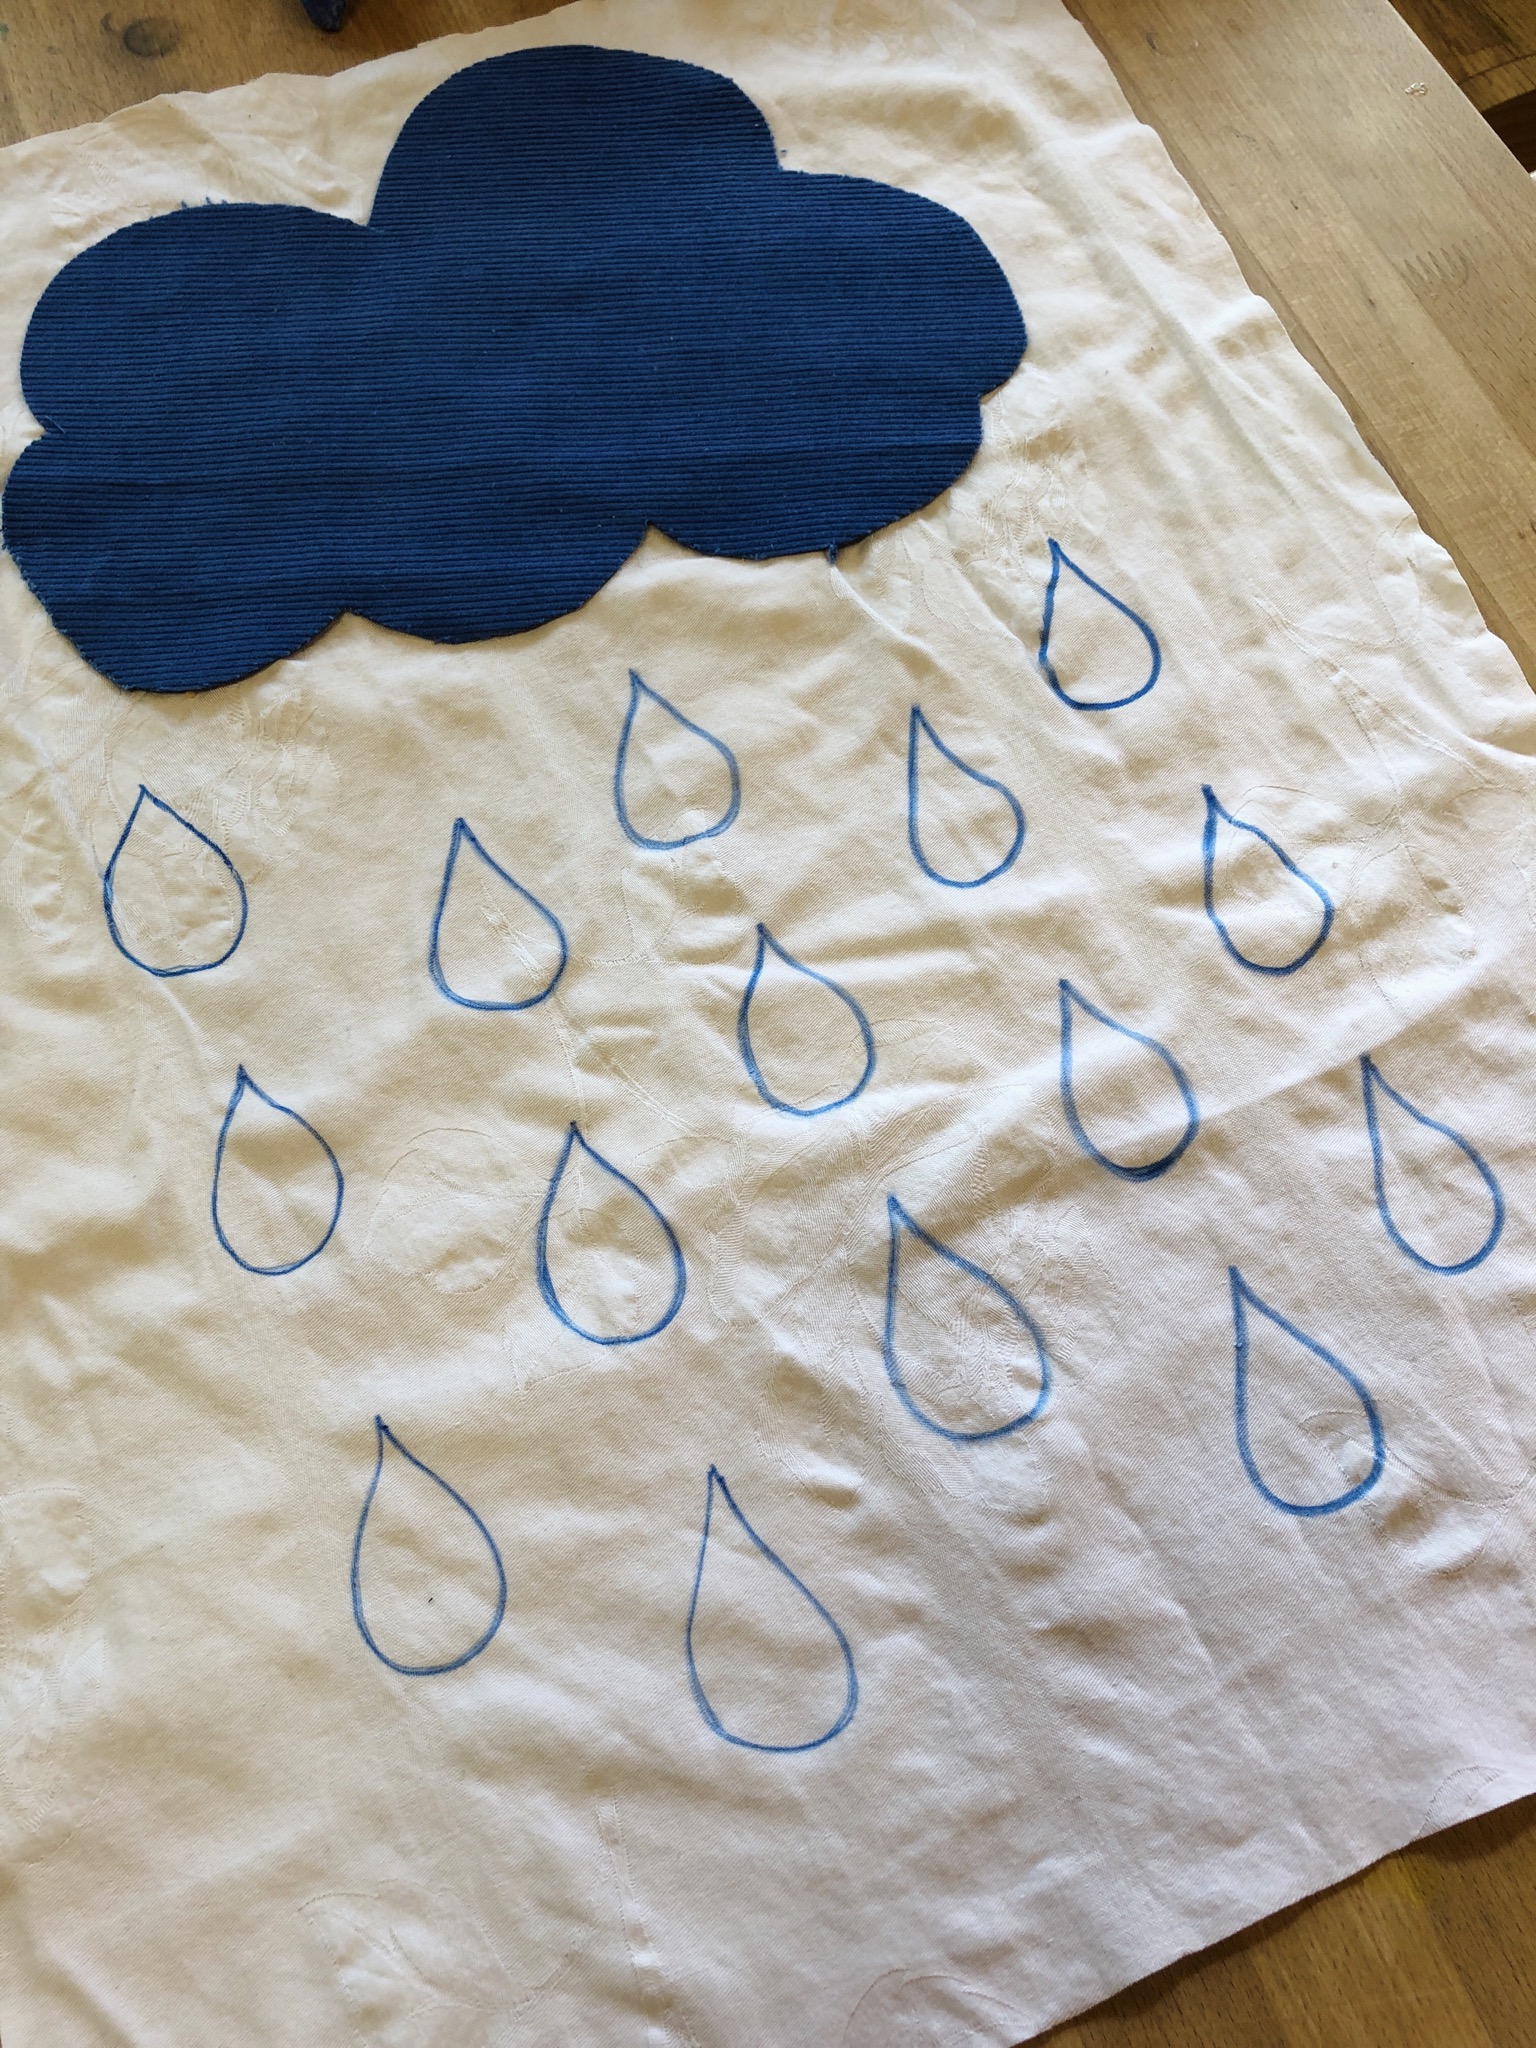 Bild zum Schritt 14 für das Bastel- und DIY-Abenteuer für Kinder: 'Regentropfen ca.  in der Größe der Stofftropfen (Filztropfen) aufmalen.'